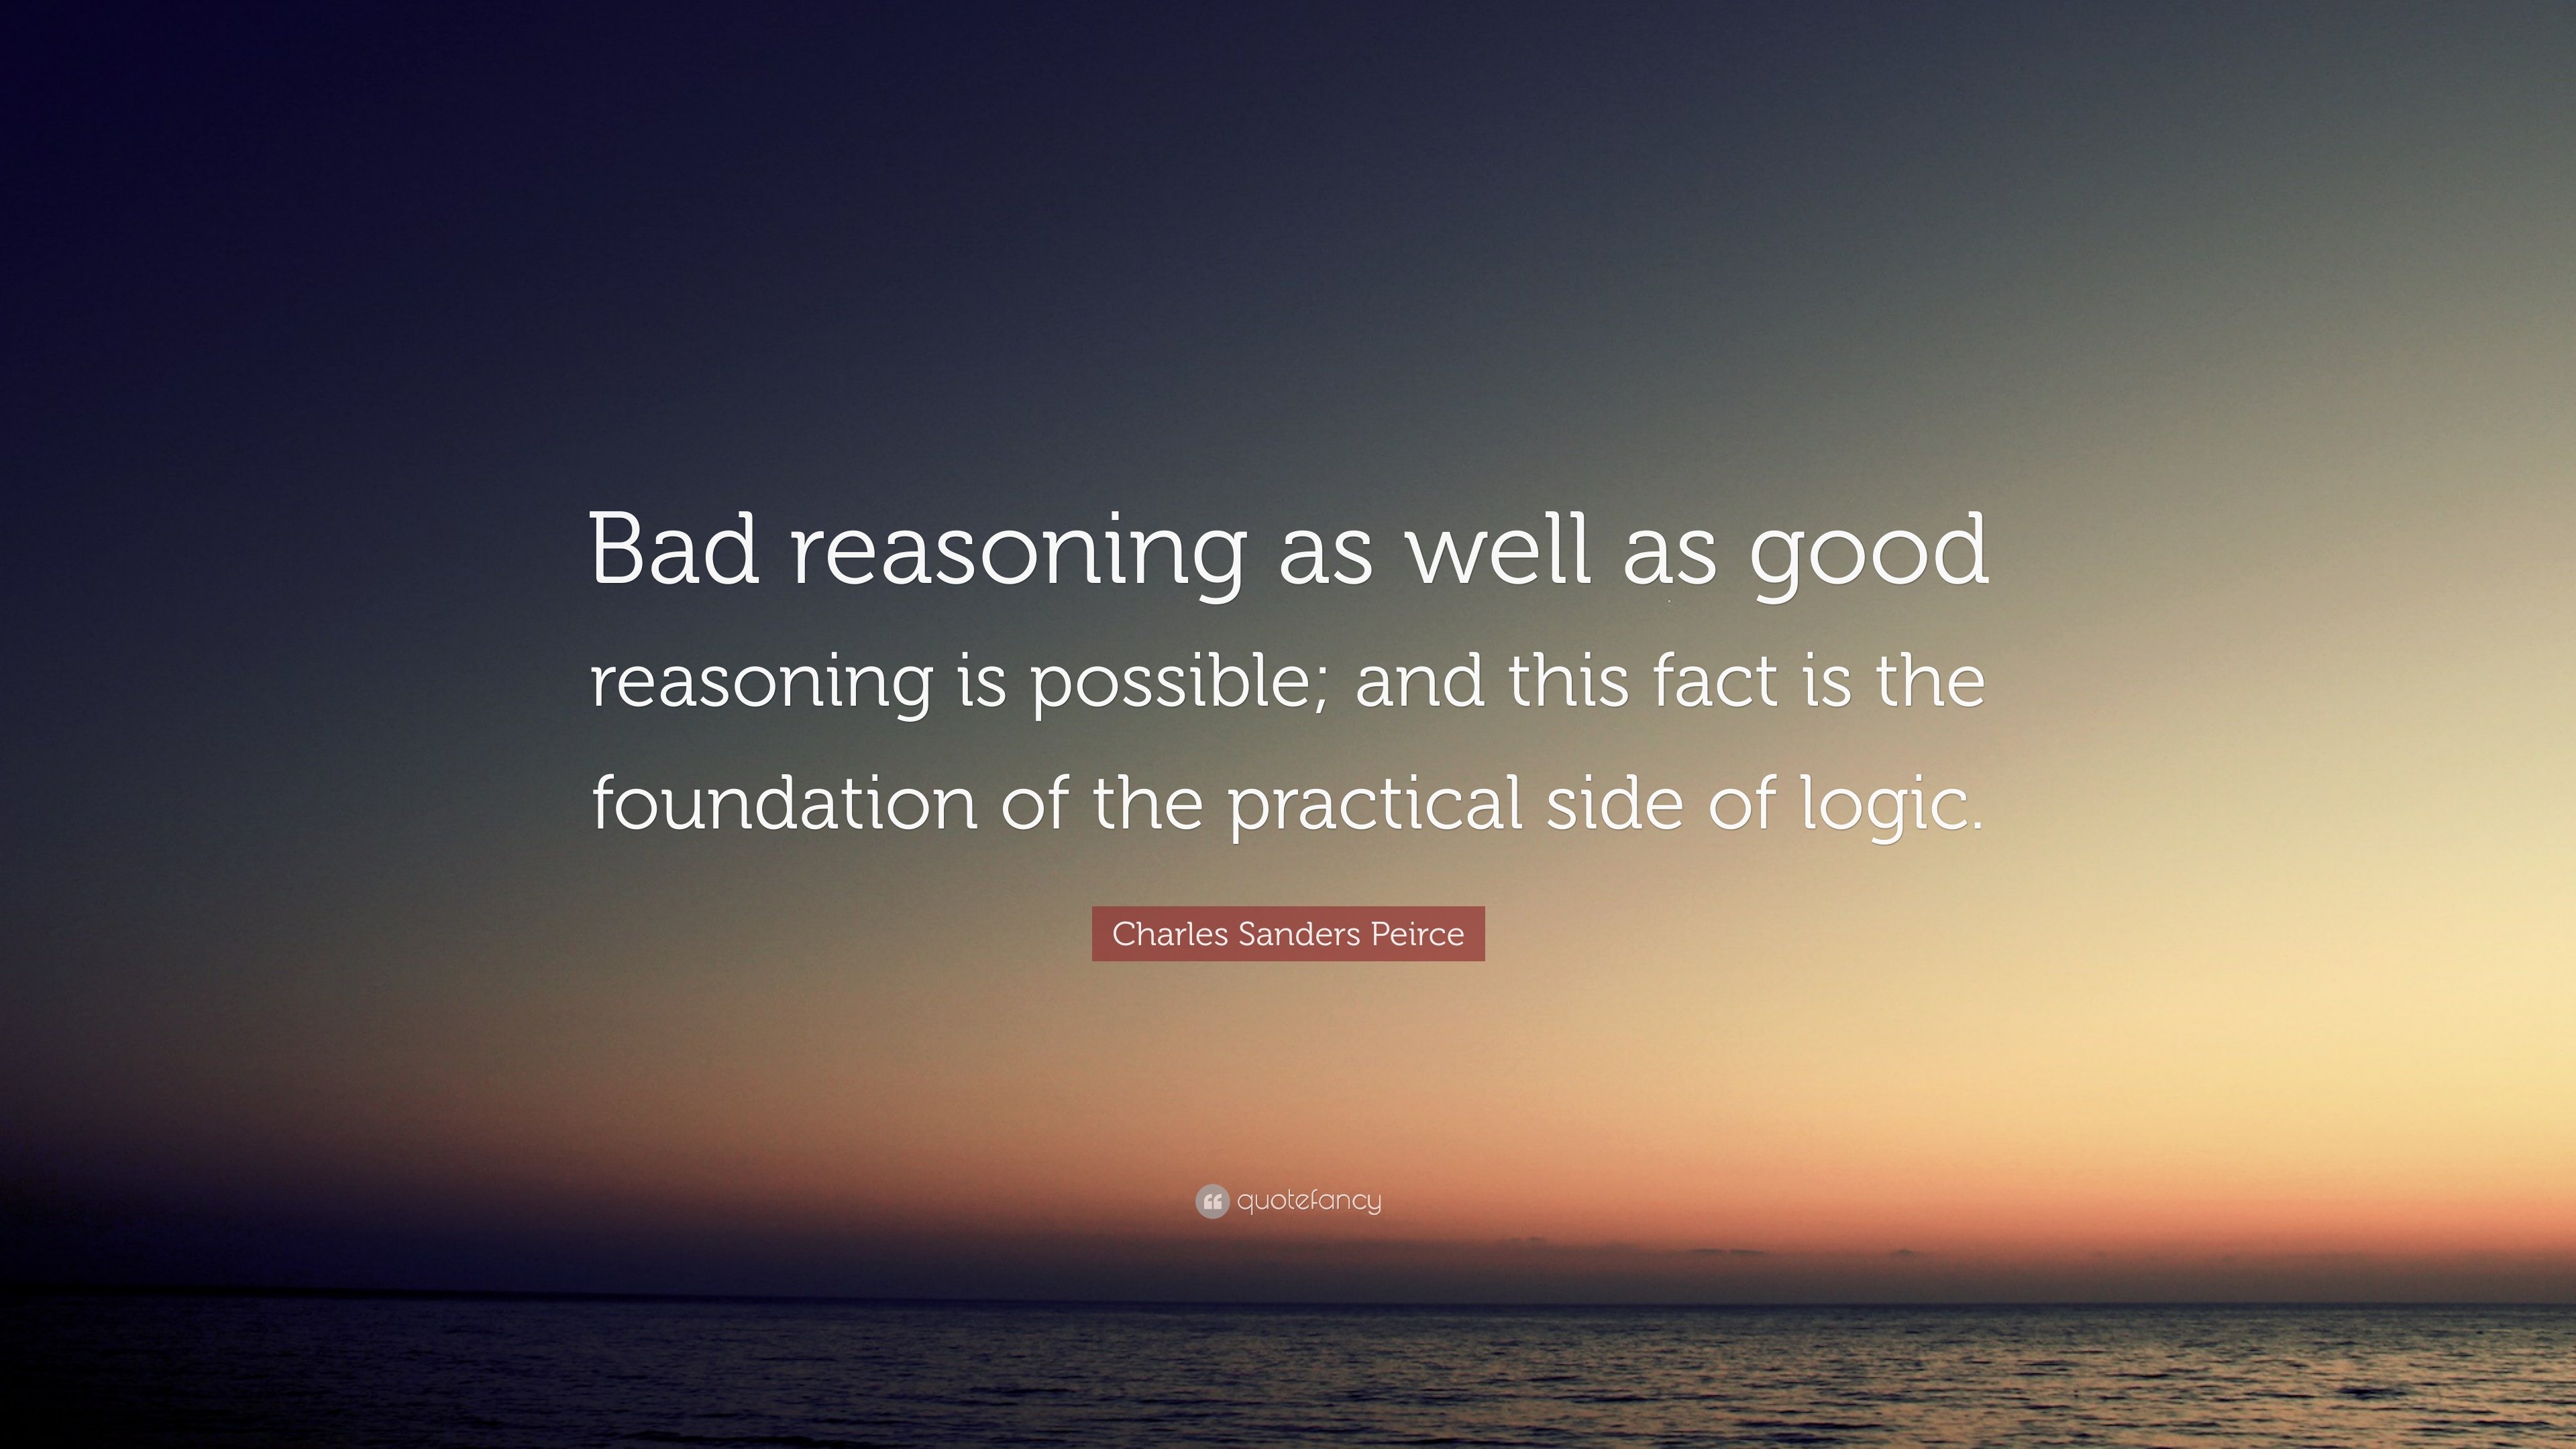 Charles Sanders Peirce Quote: “Bad reasoning as well as good